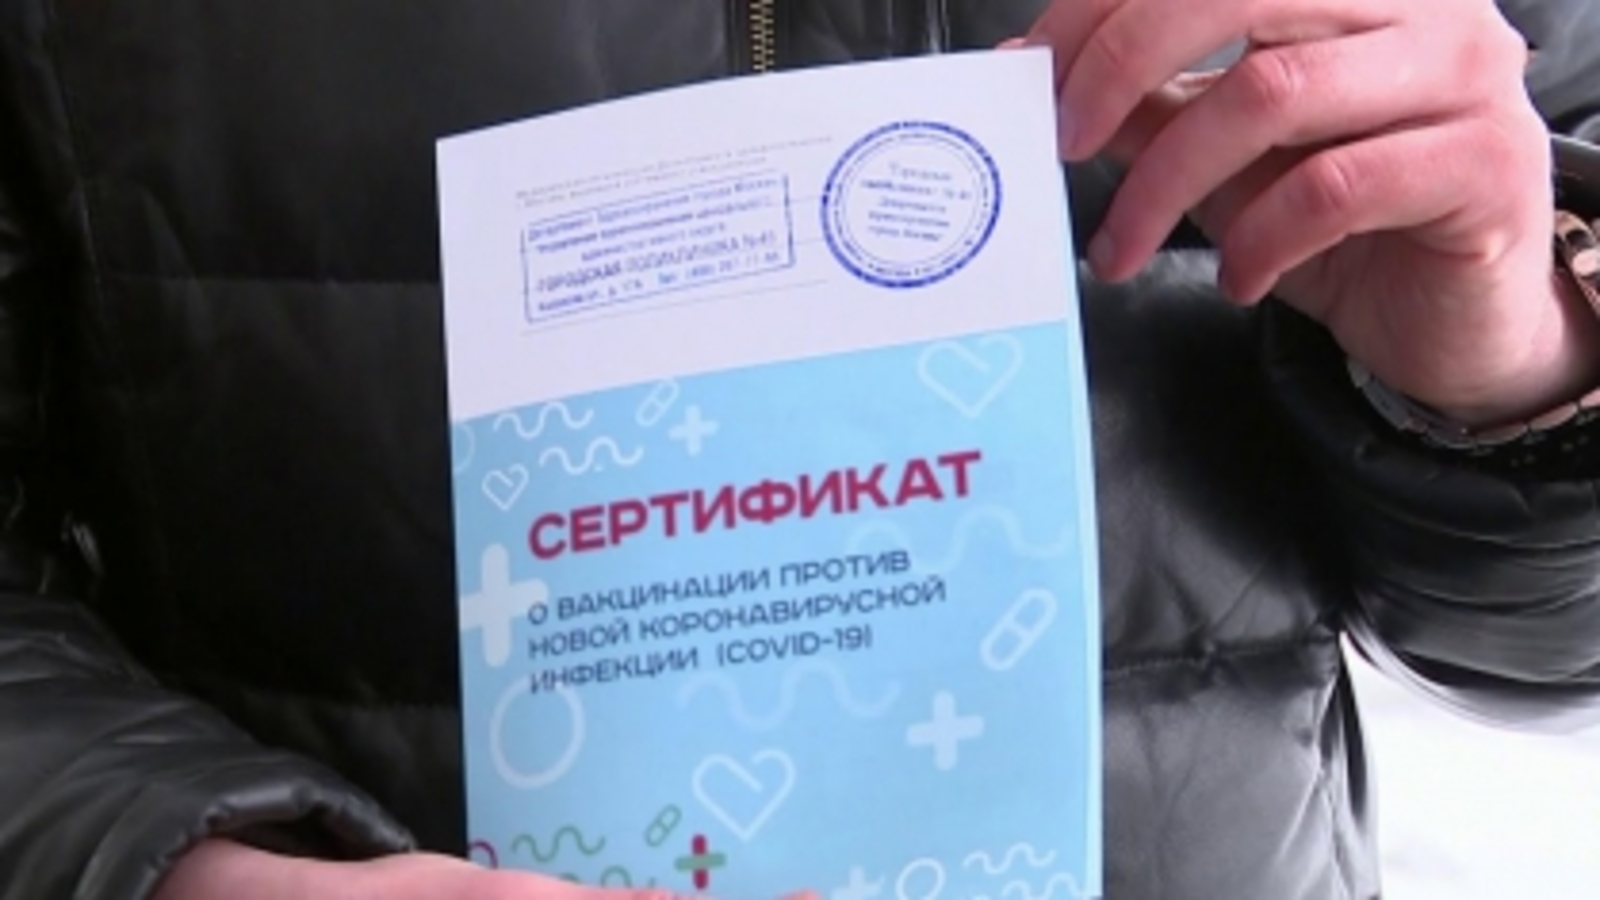 В Башкортостане возбуждено уголовное дело в отношении женщины-терапевта за подделку справок